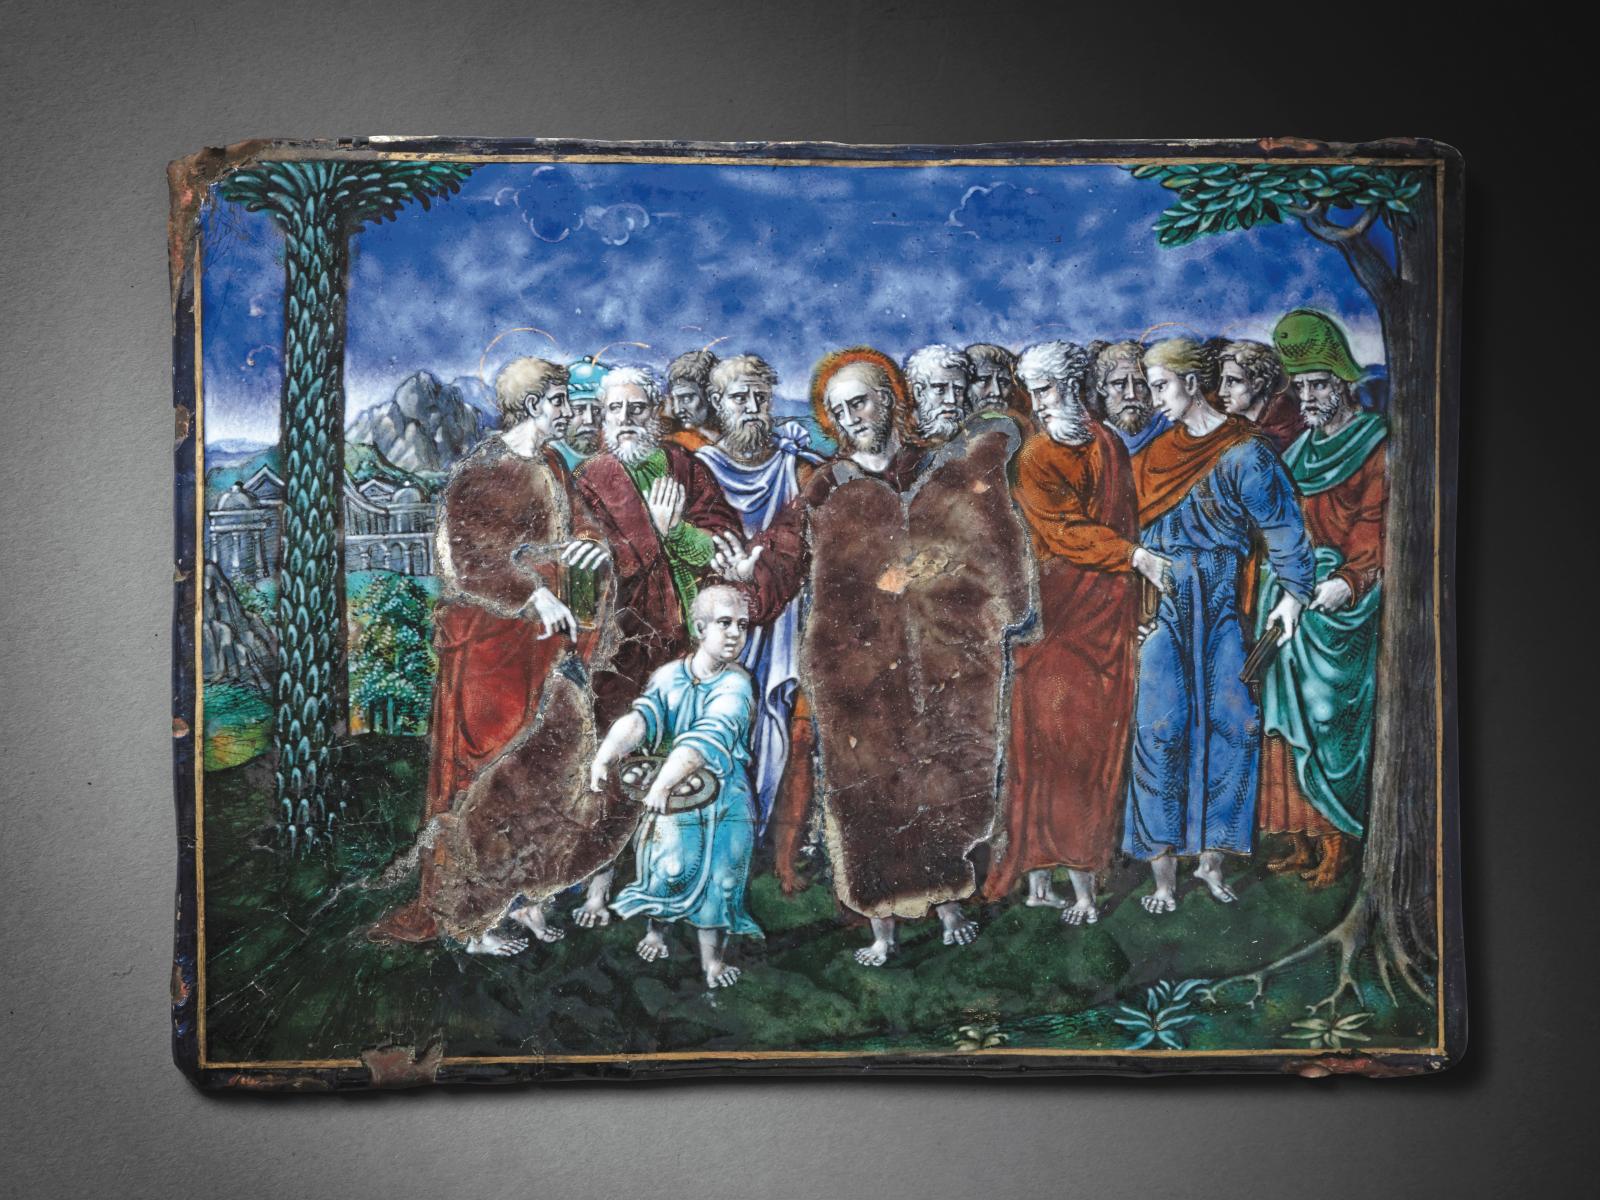 Saint Martial de retour sur un émail peint de Limoges